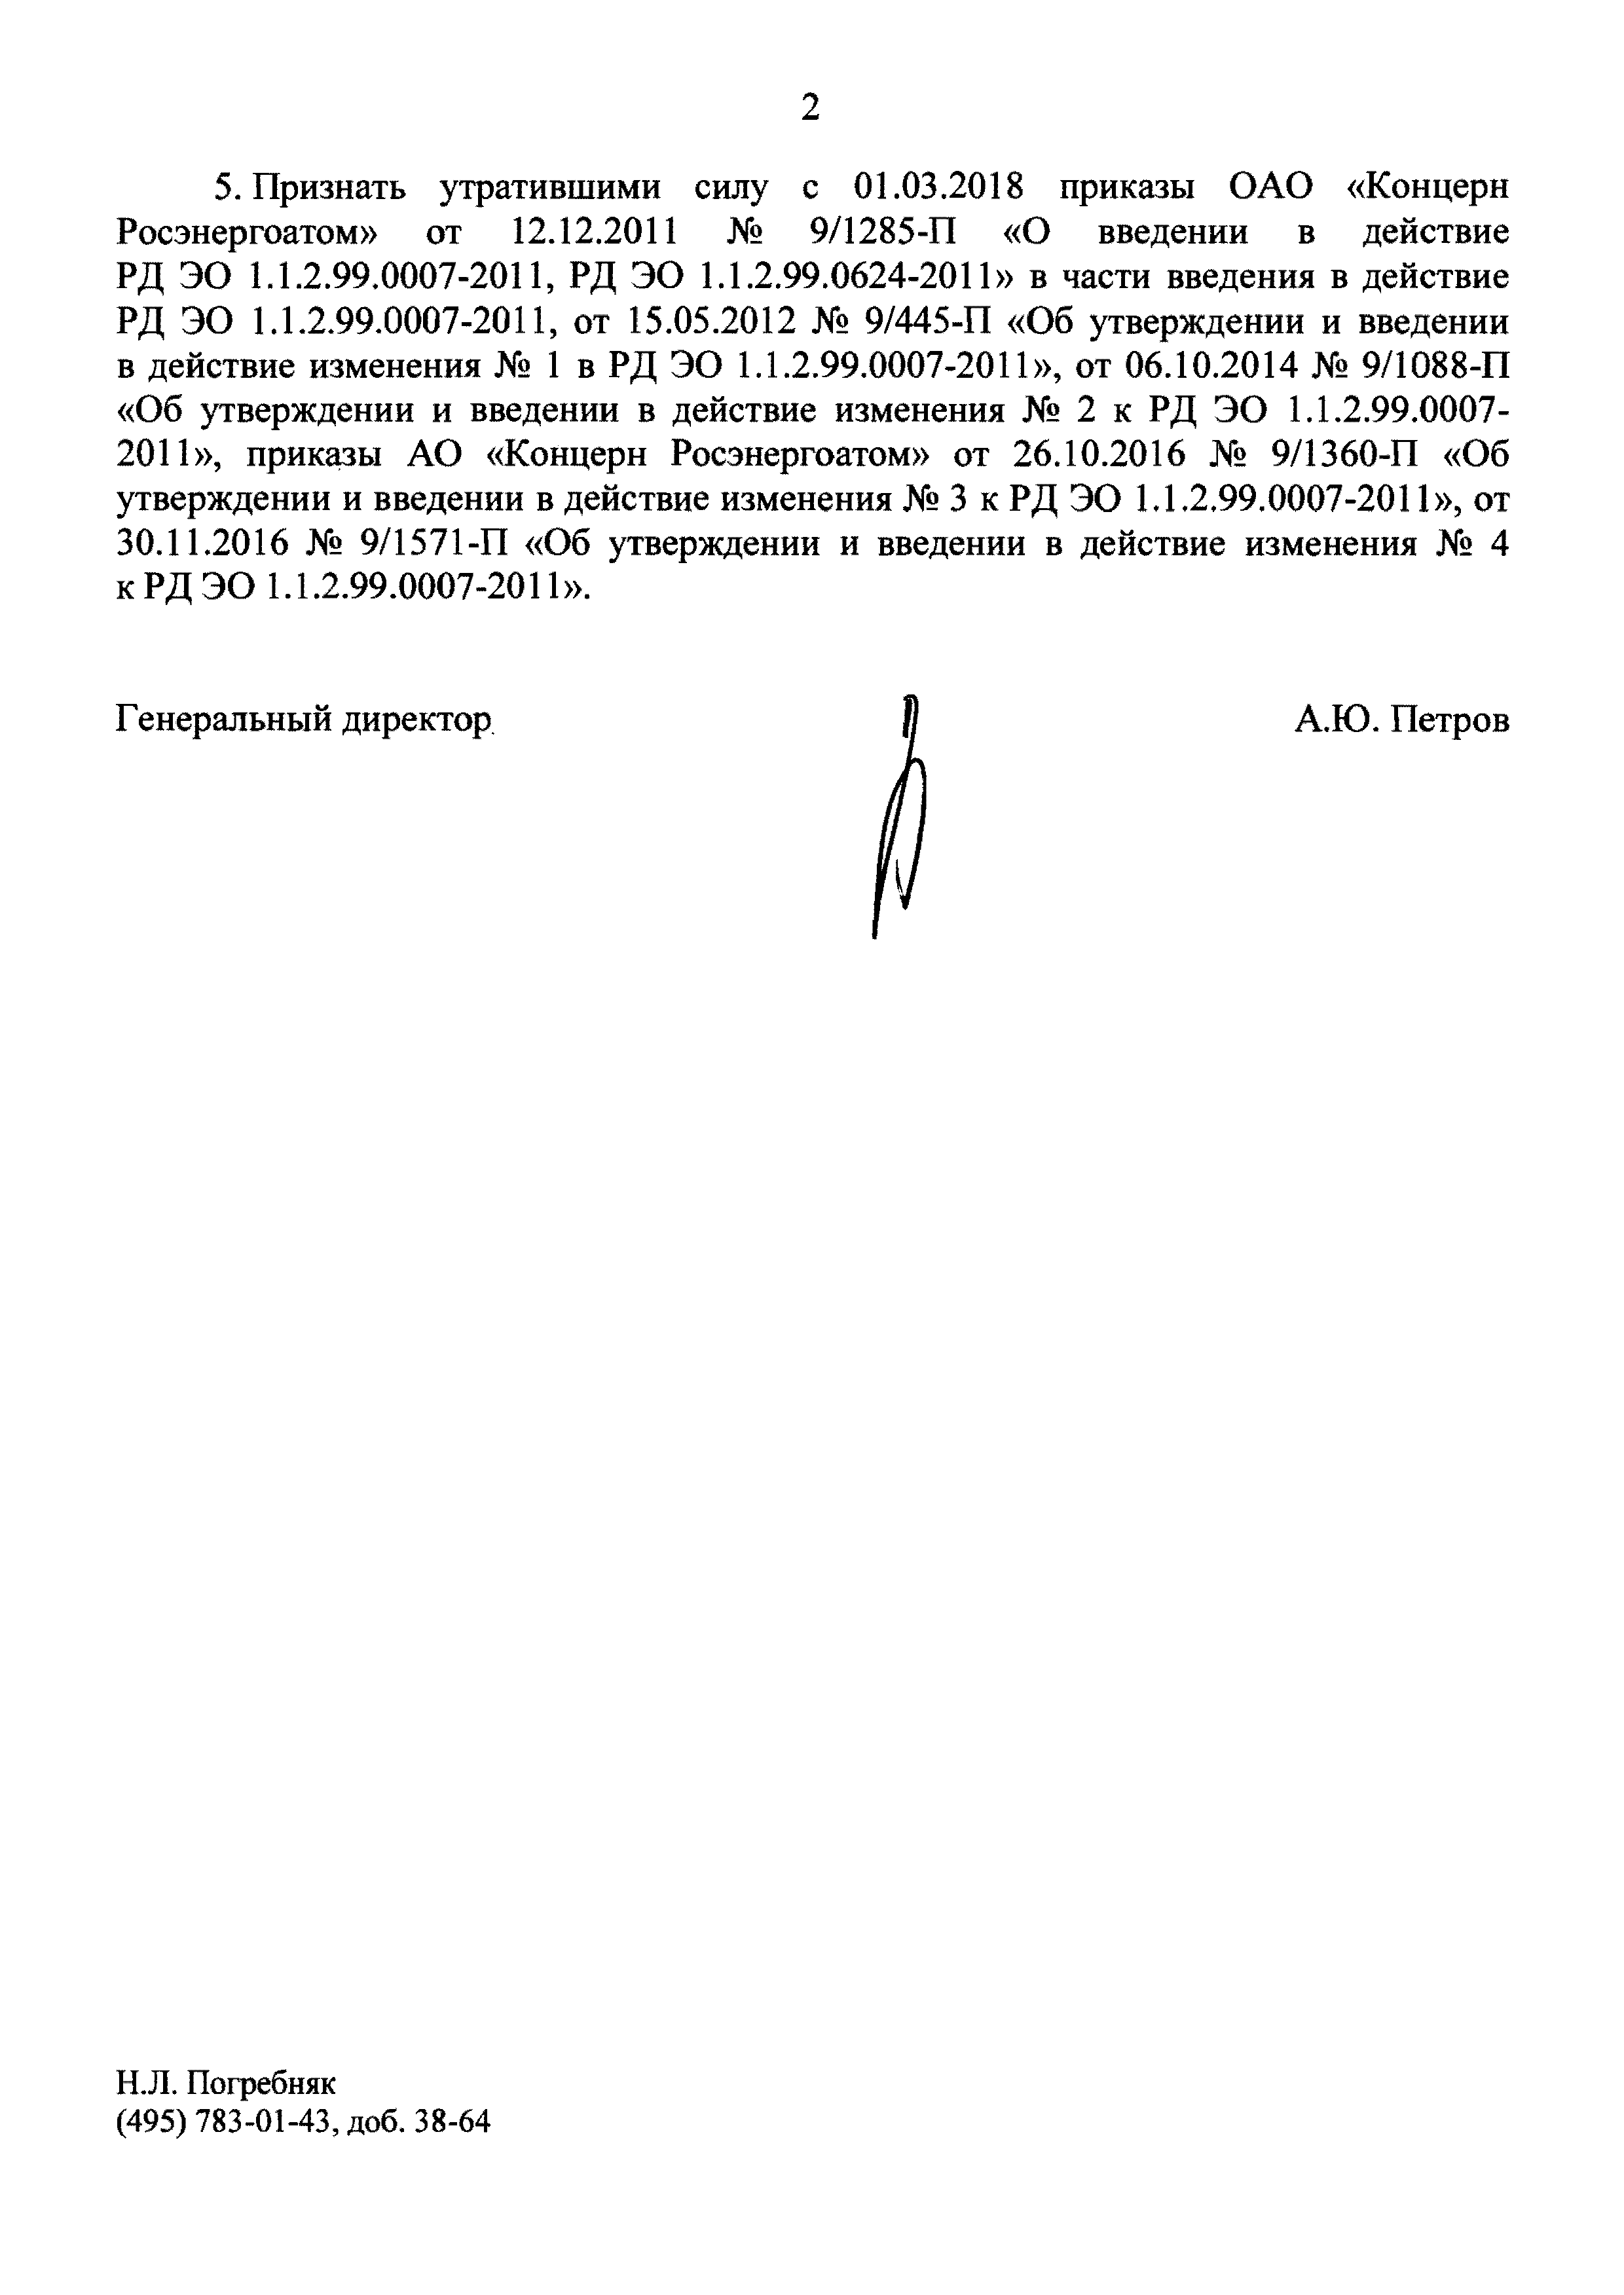 СТО 1.1.1.02.009.1407-2017